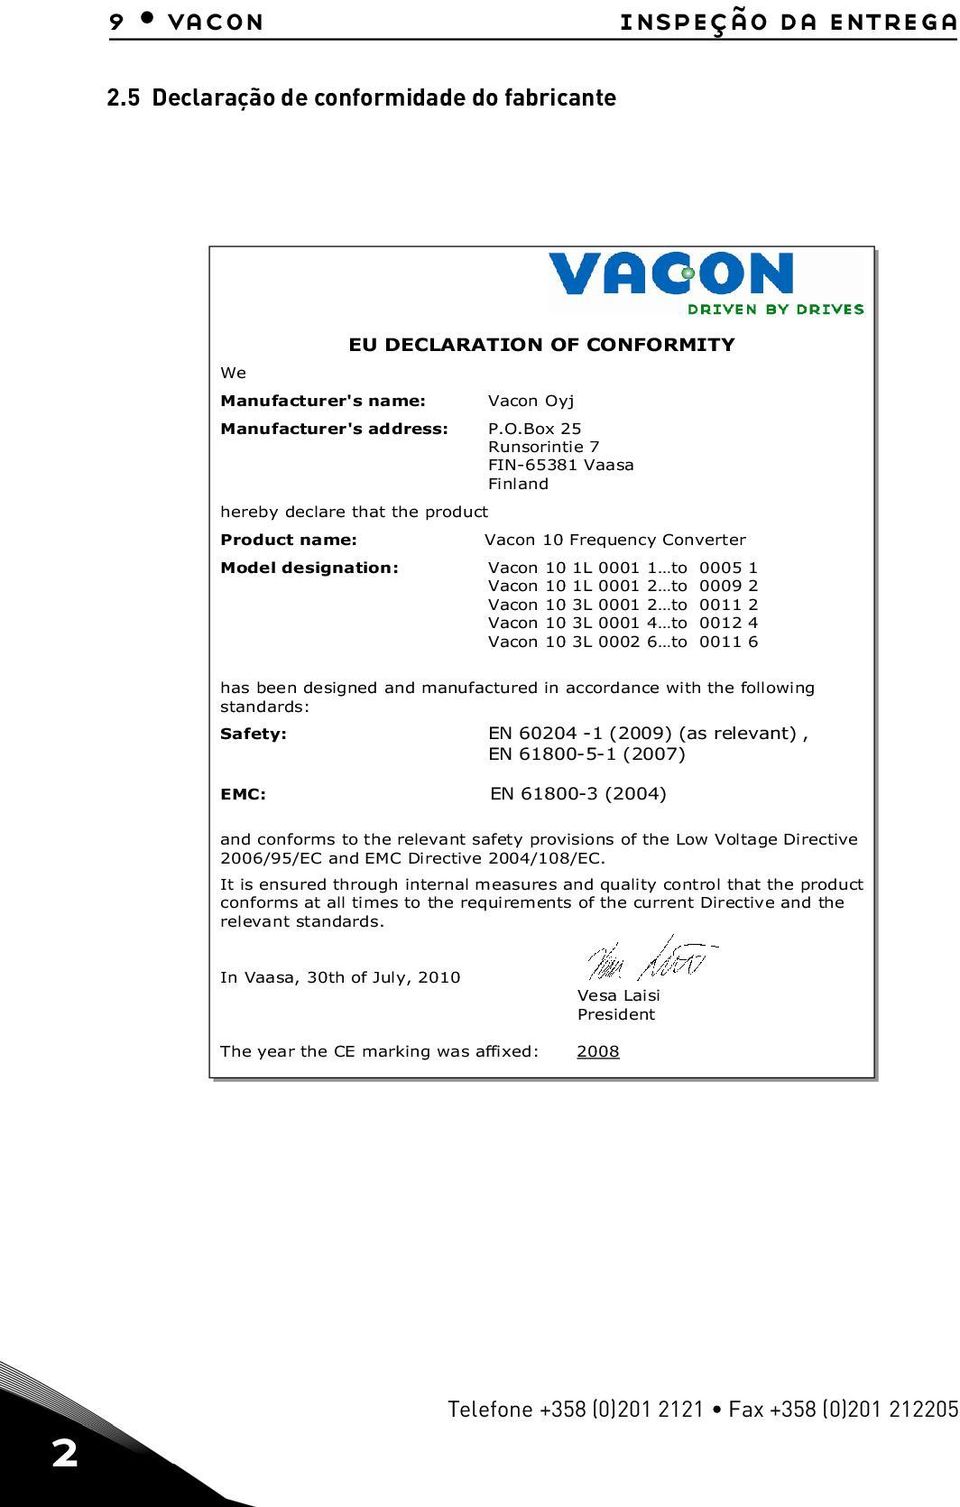 desgnaton: Vacon 10 1L 0001 1 to 0005 1 Vacon 10 1L 0001 2 to 0009 2 Vacon 10 3L 0001 2 to 0011 2 Vacon 10 3L 0001 4 to 0012 4 Vacon 10 3L 0002 6 to 0011 6 has been desgned and manufactured n